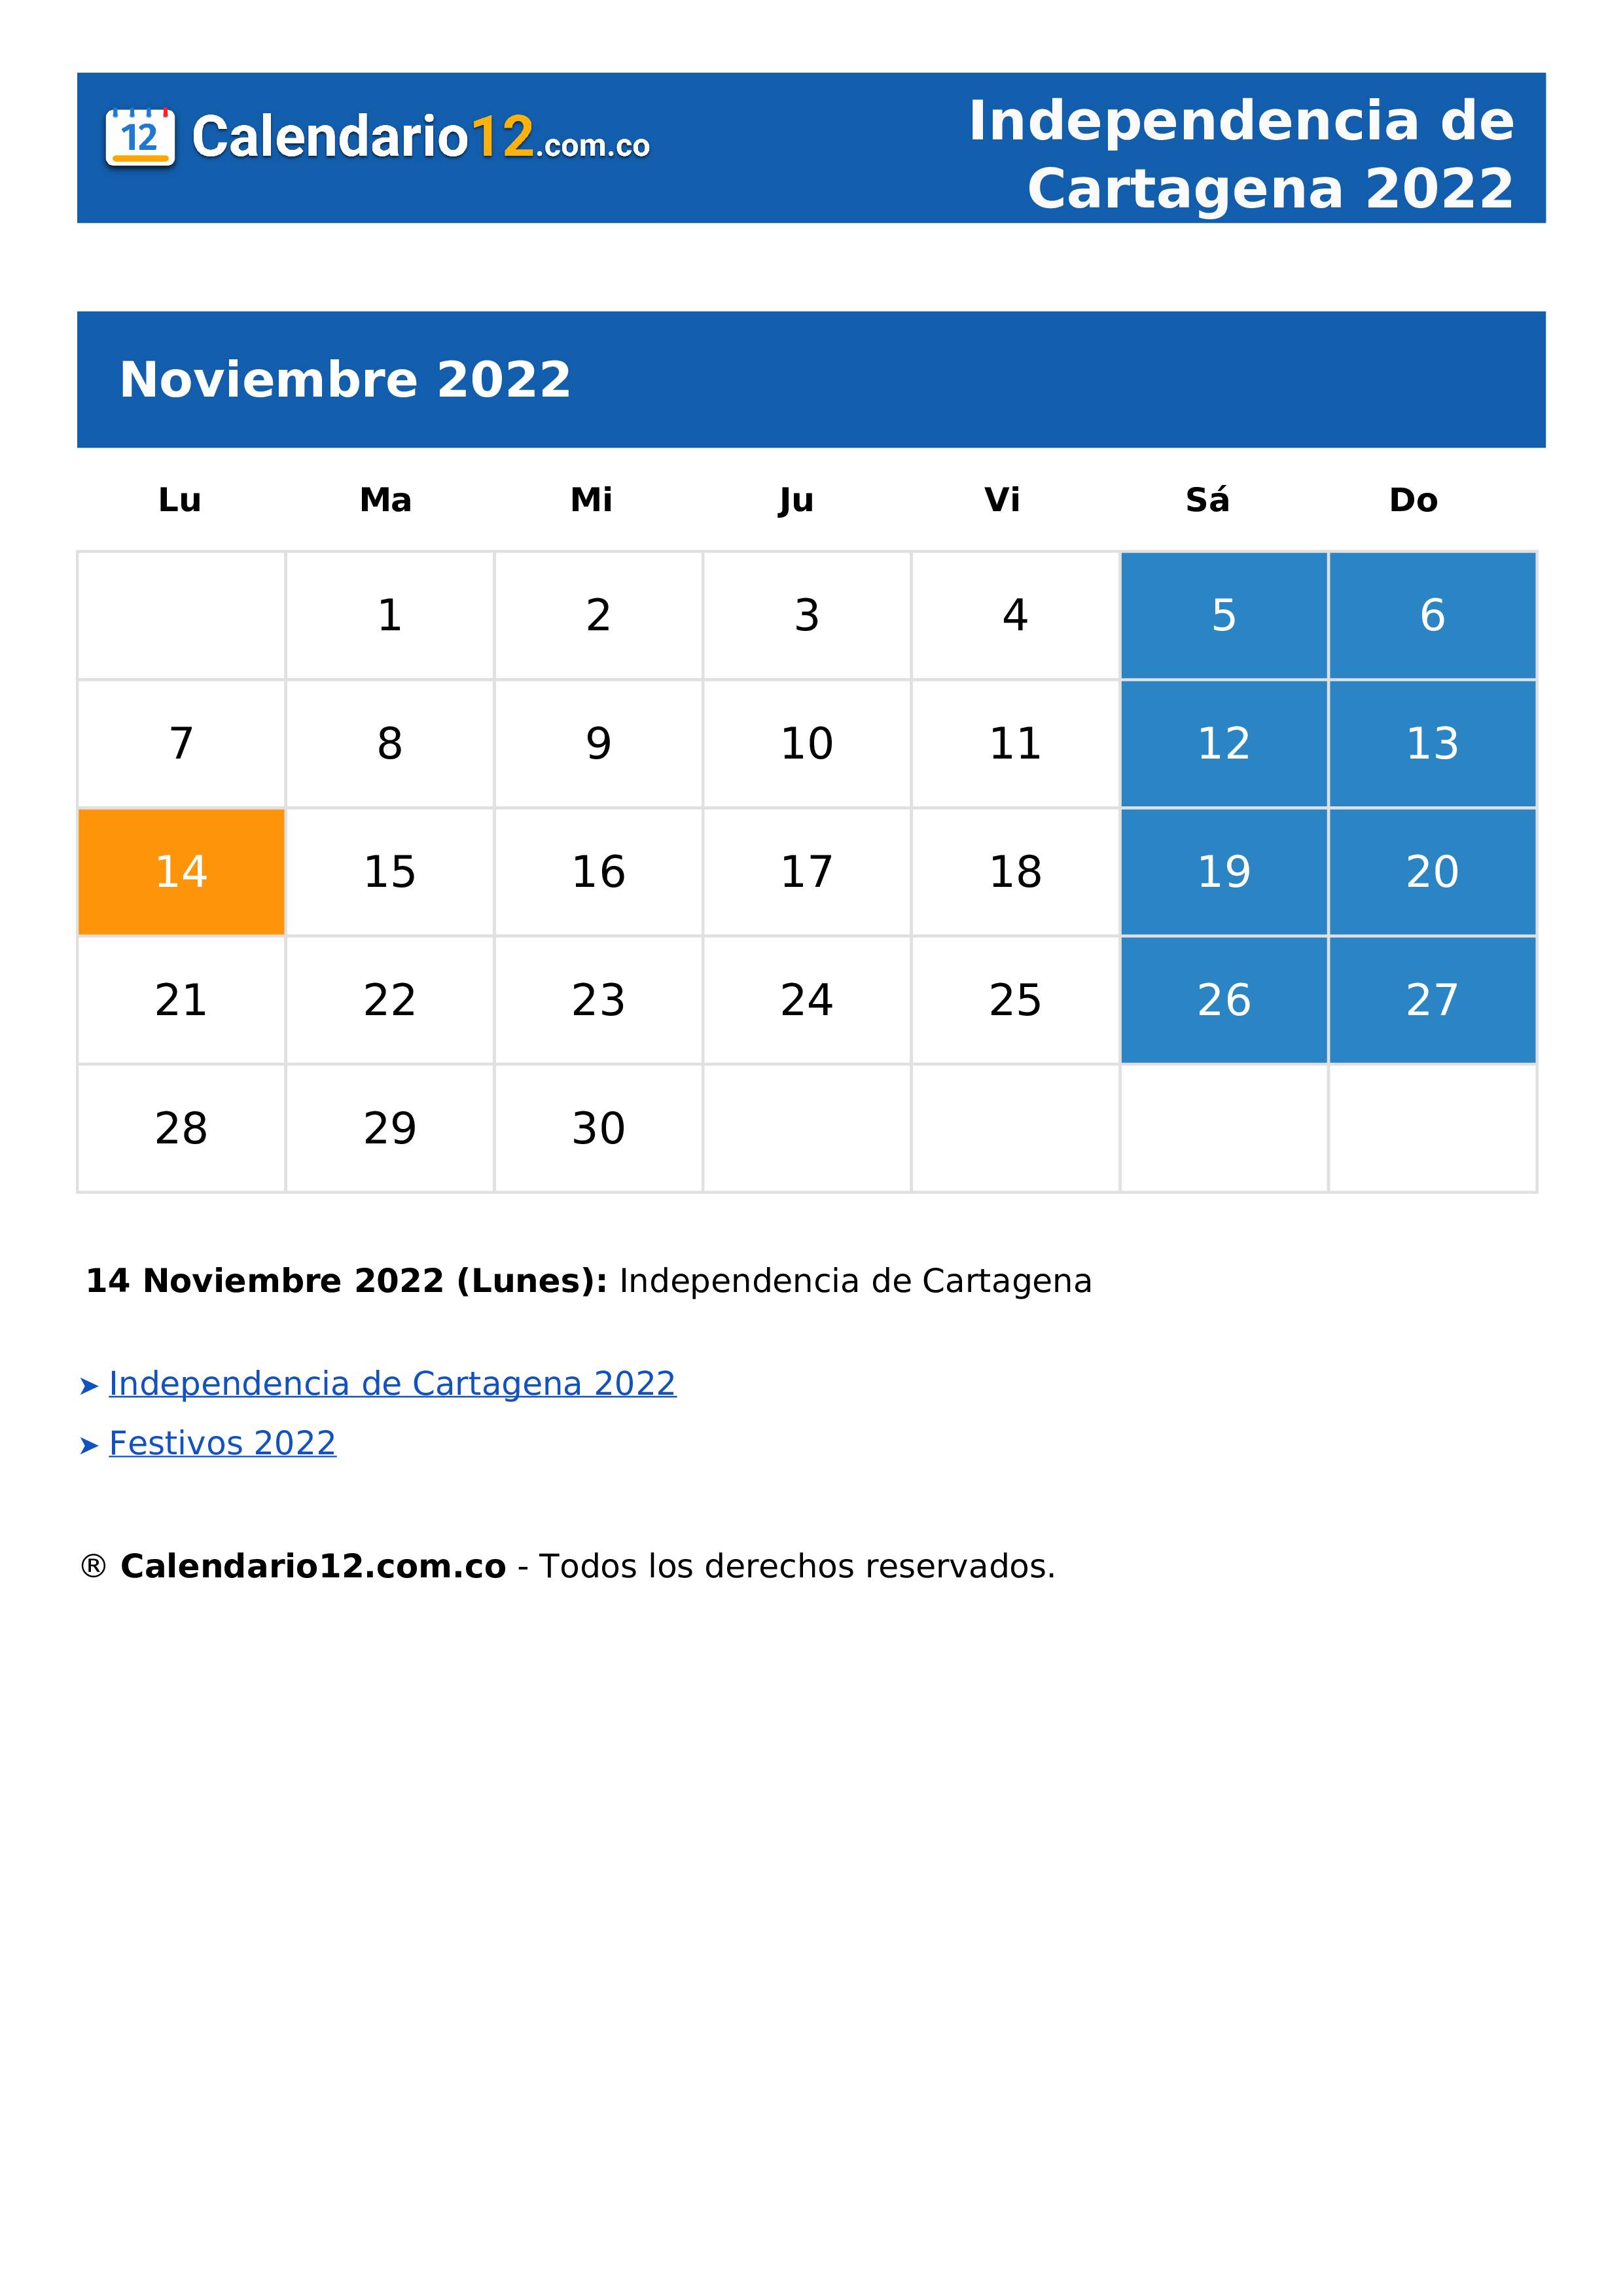 Independencia de Cartagena 2022